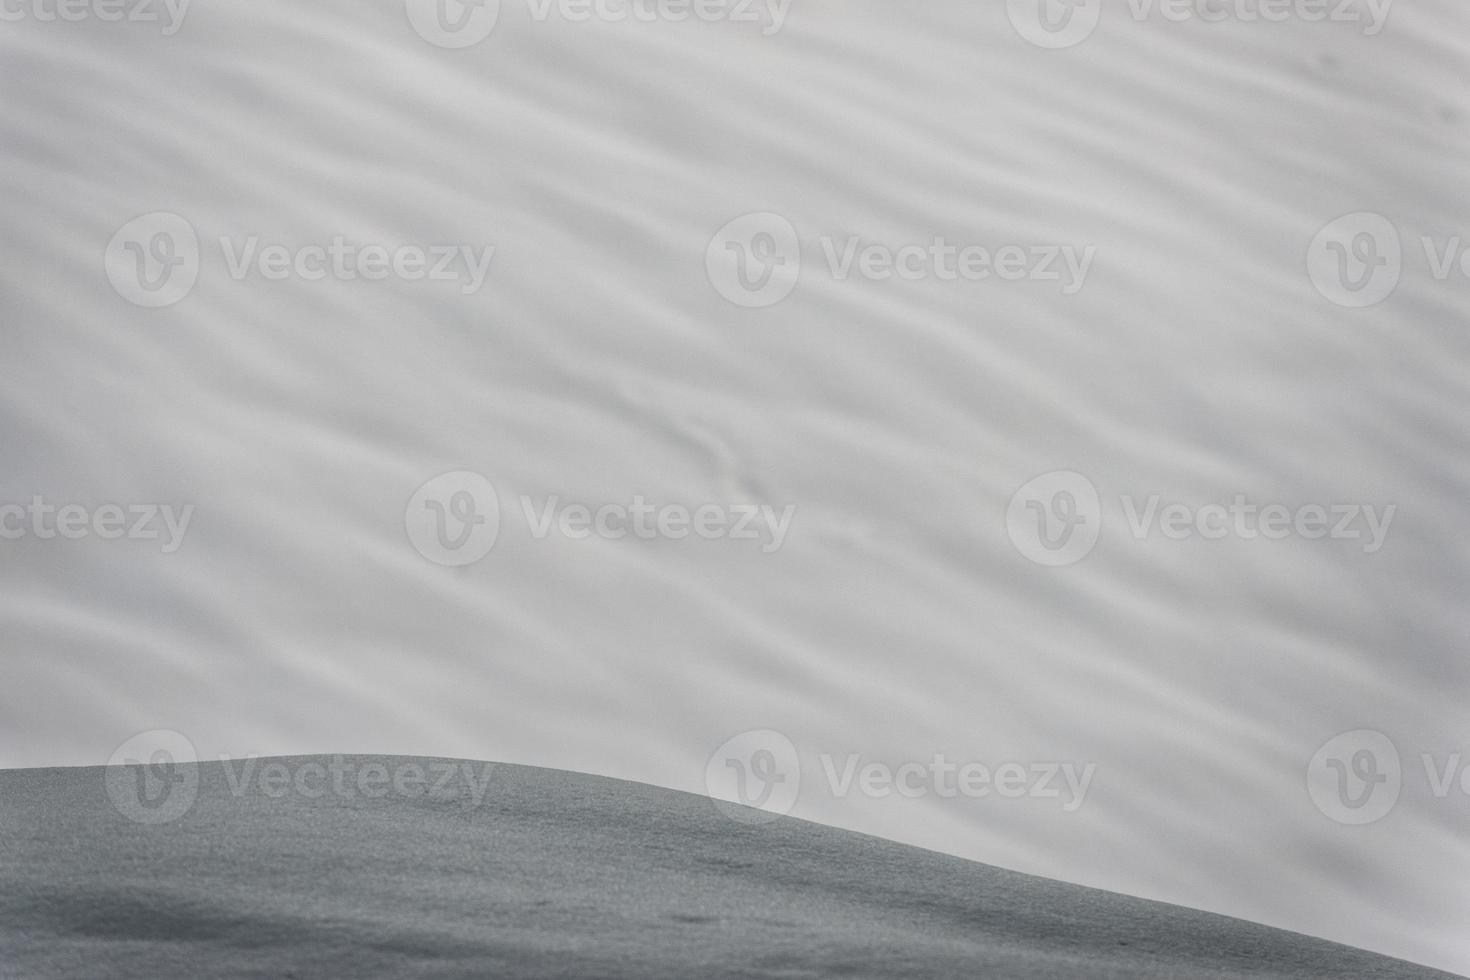 avalancha de nieve blanca en los alpes foto